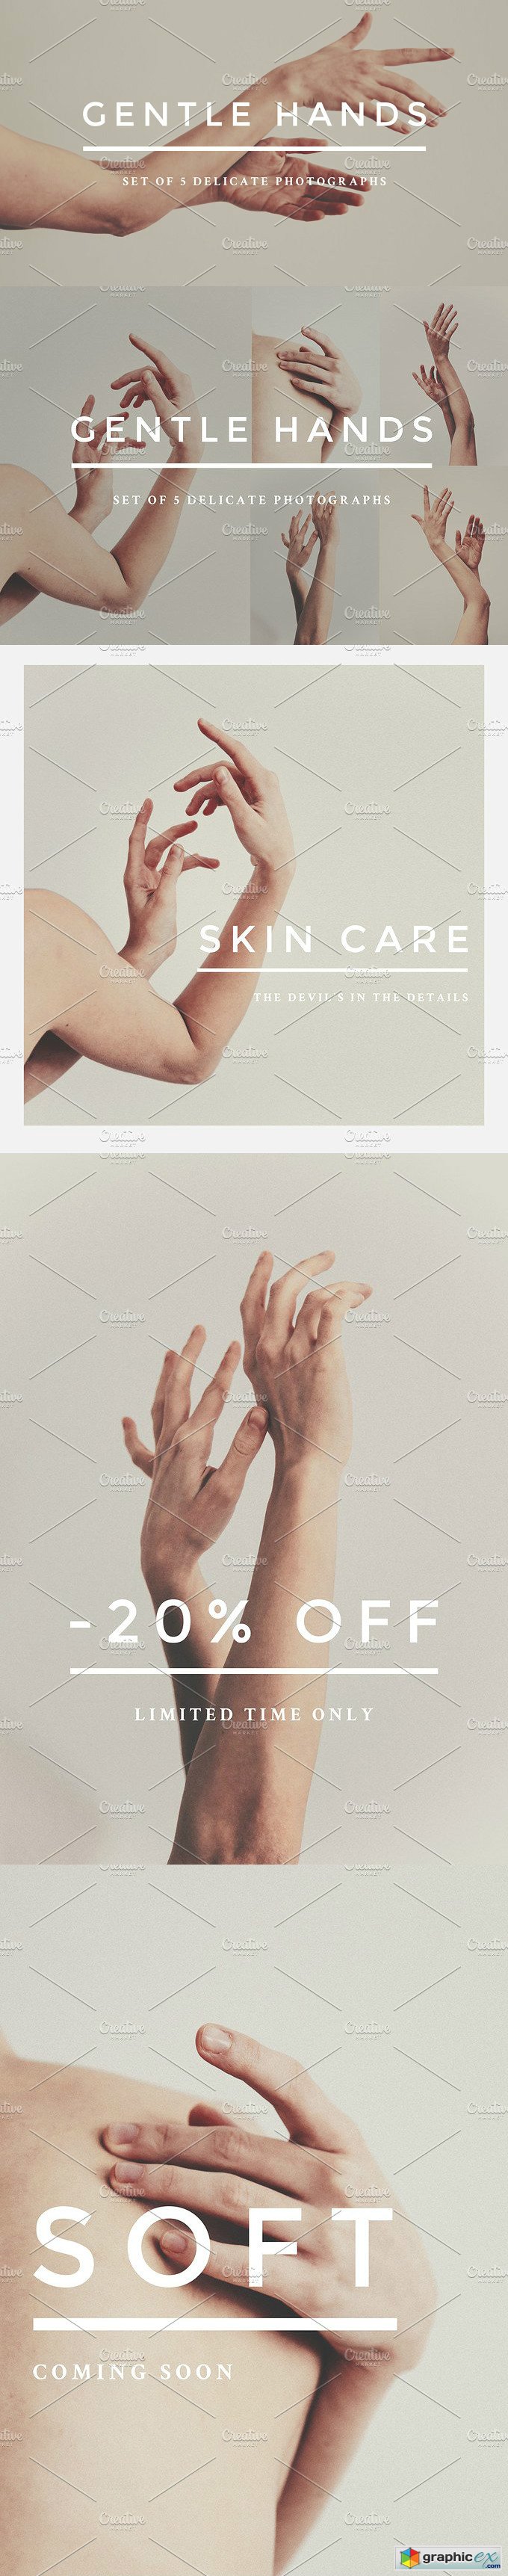 Gentle hands photo bundle